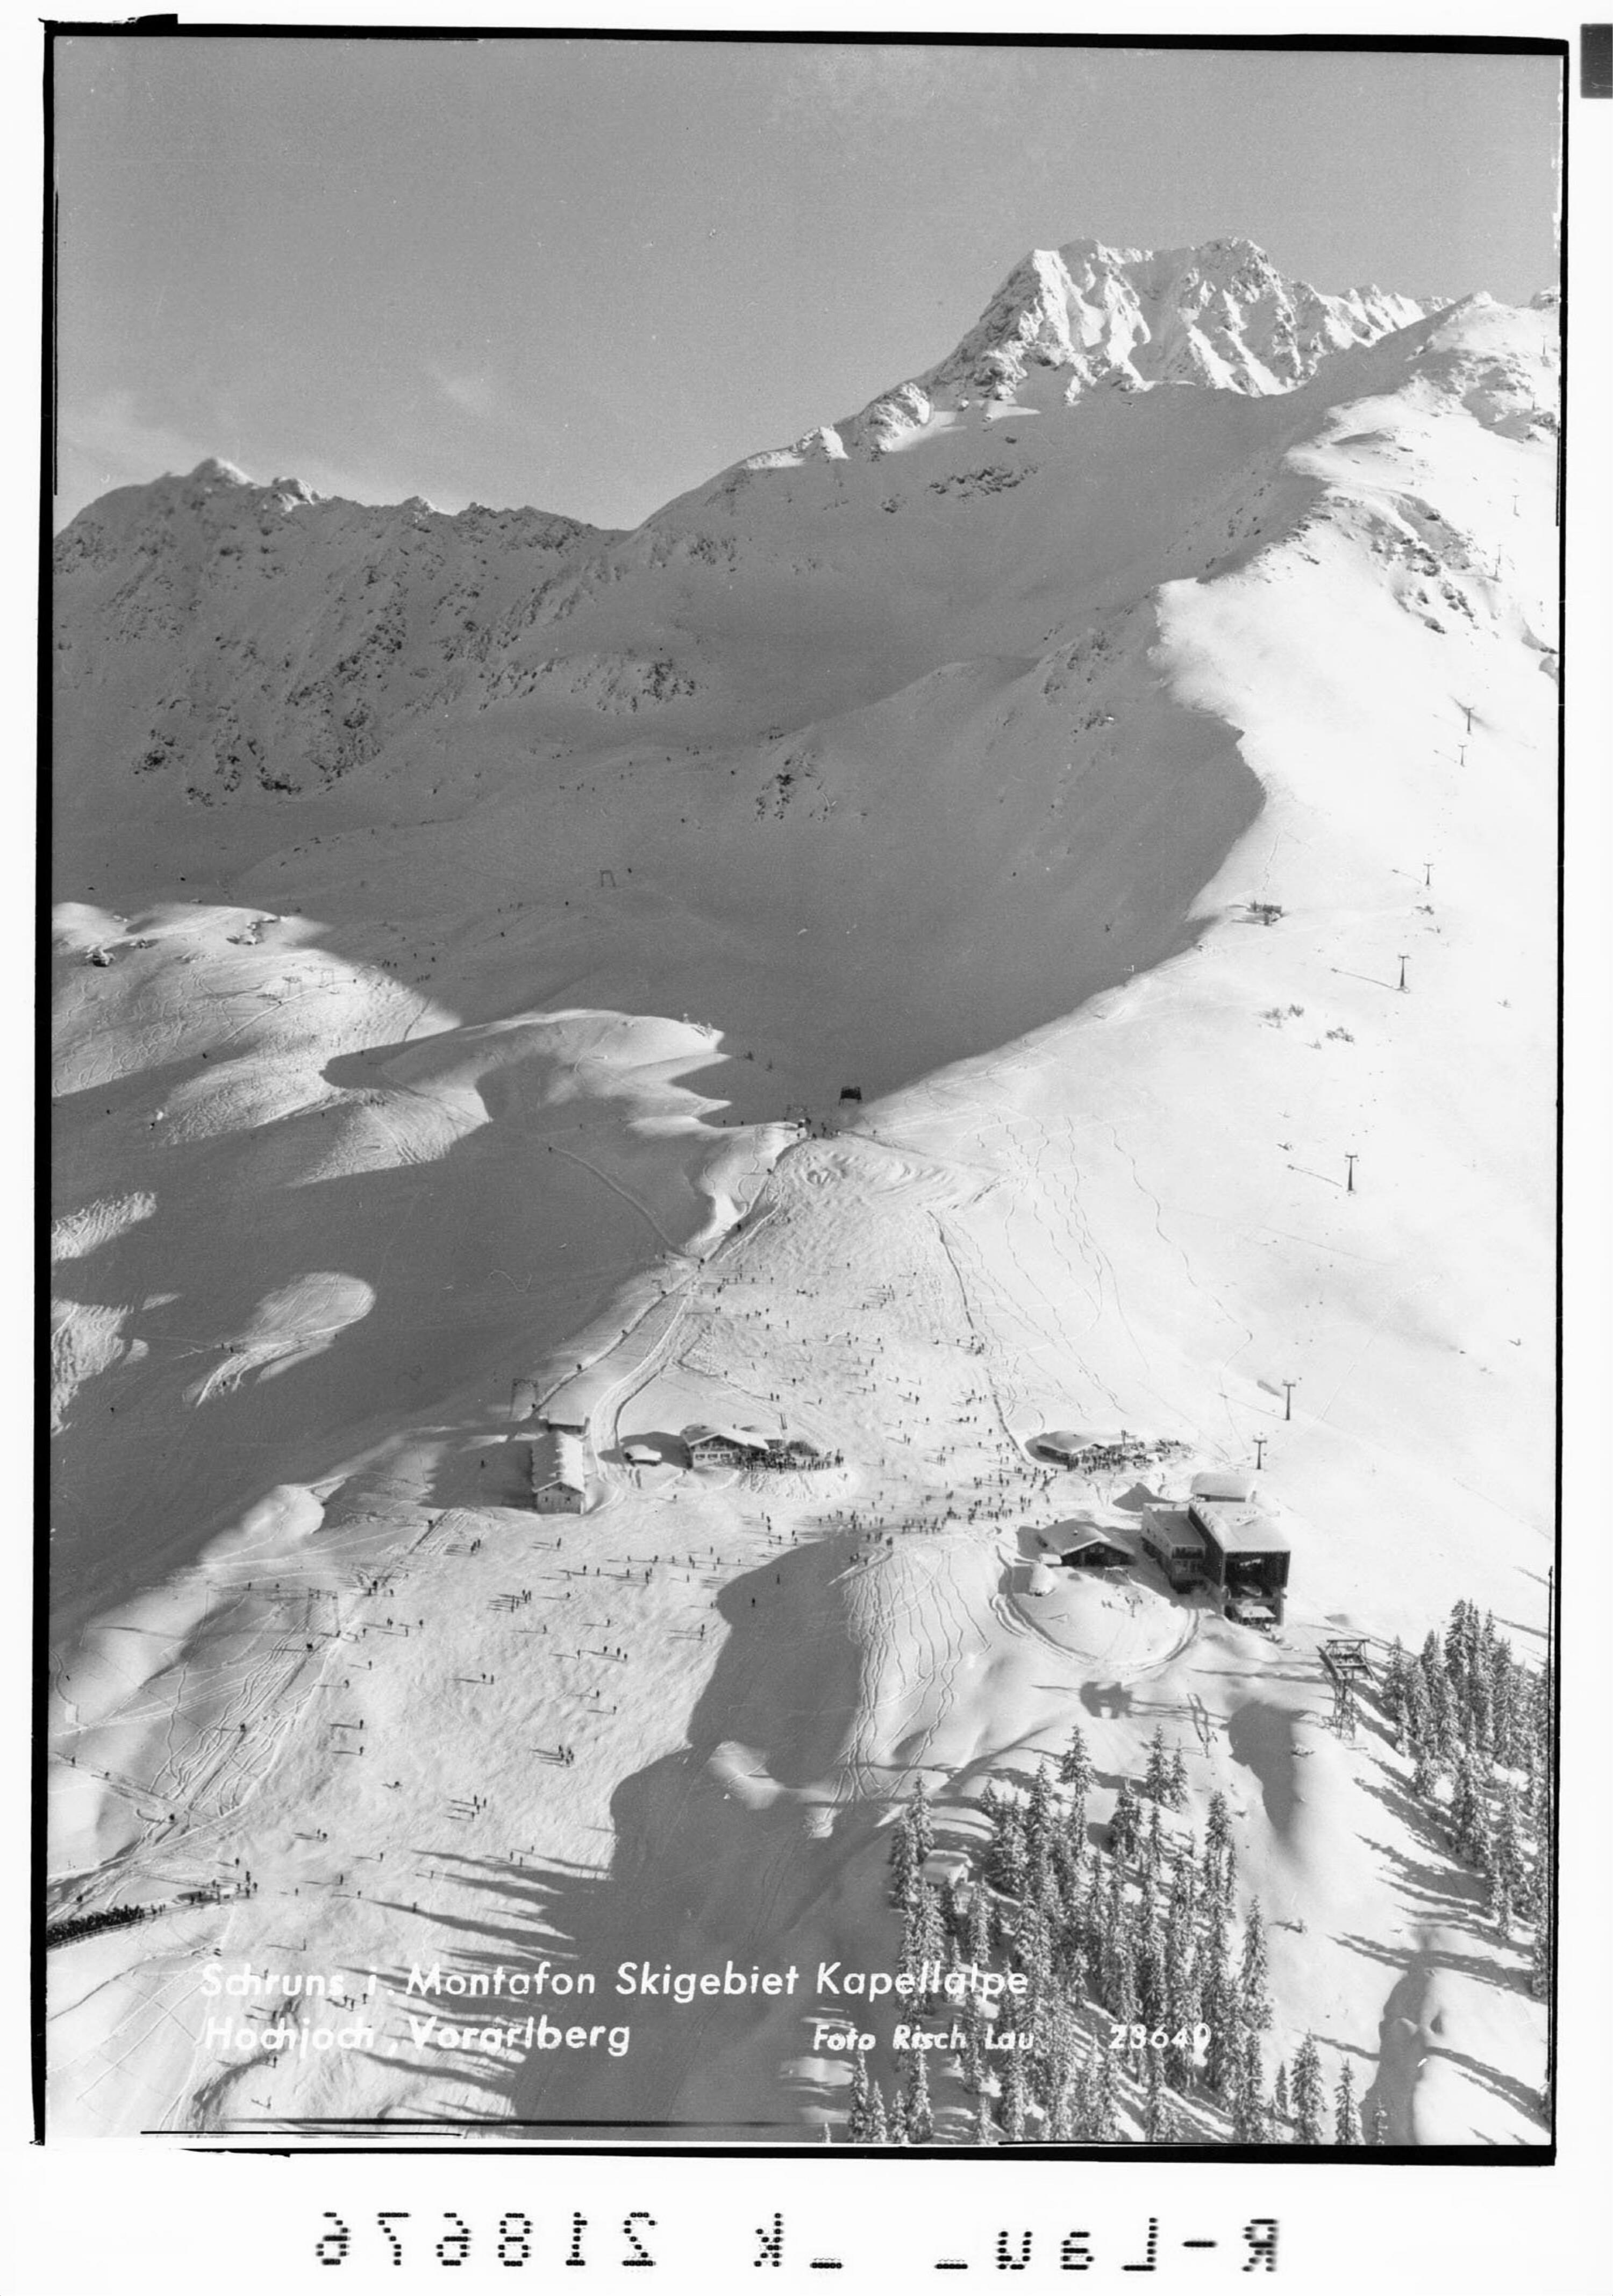 Schruns im Montafon Skigebiet Kapellalpe Hochjoch, Vorarlberg></div>


    <hr>
    <div class=